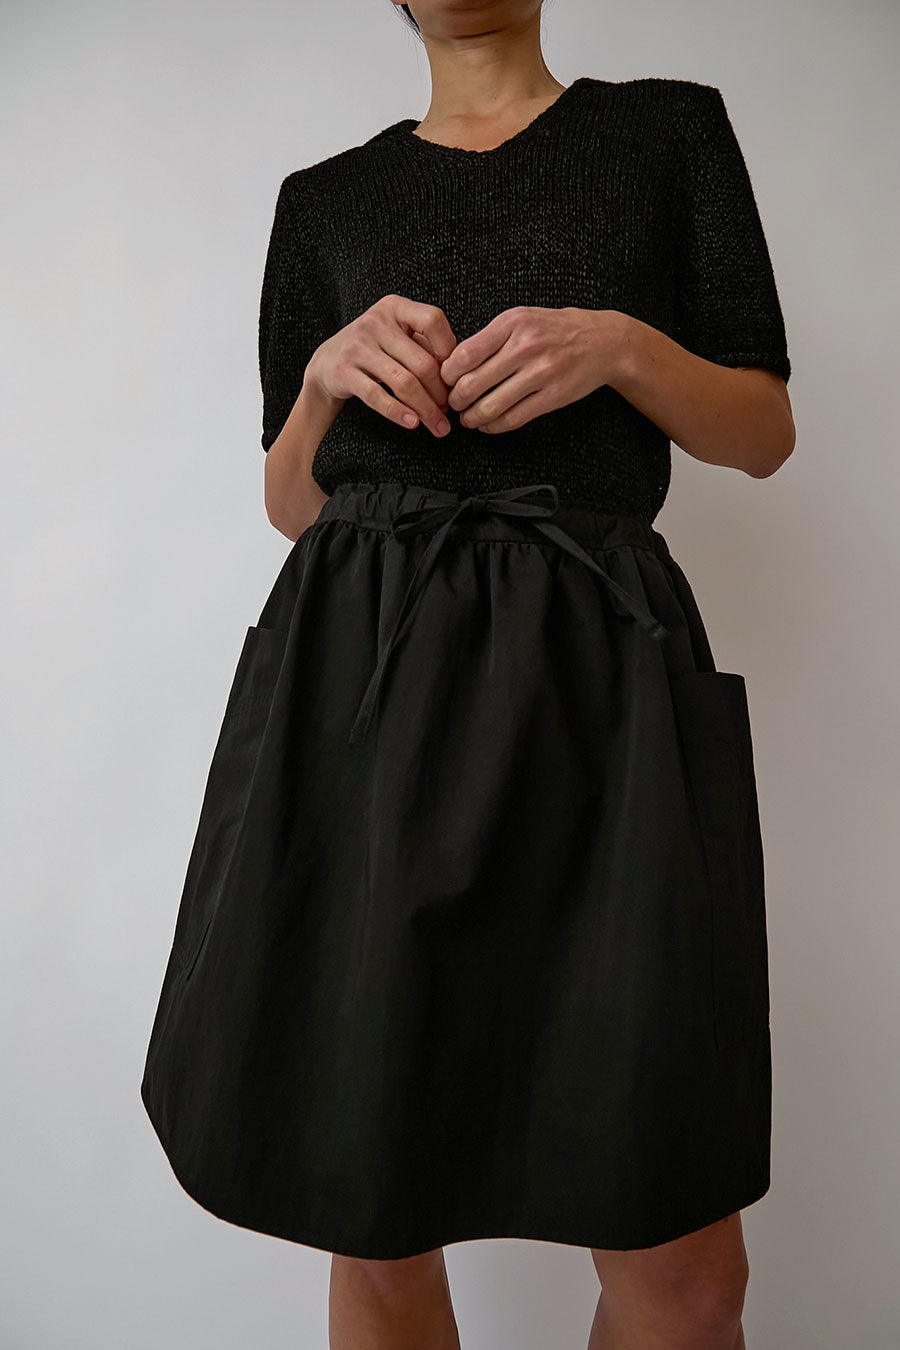 Nothing Written Casali Flared Skirt in Black